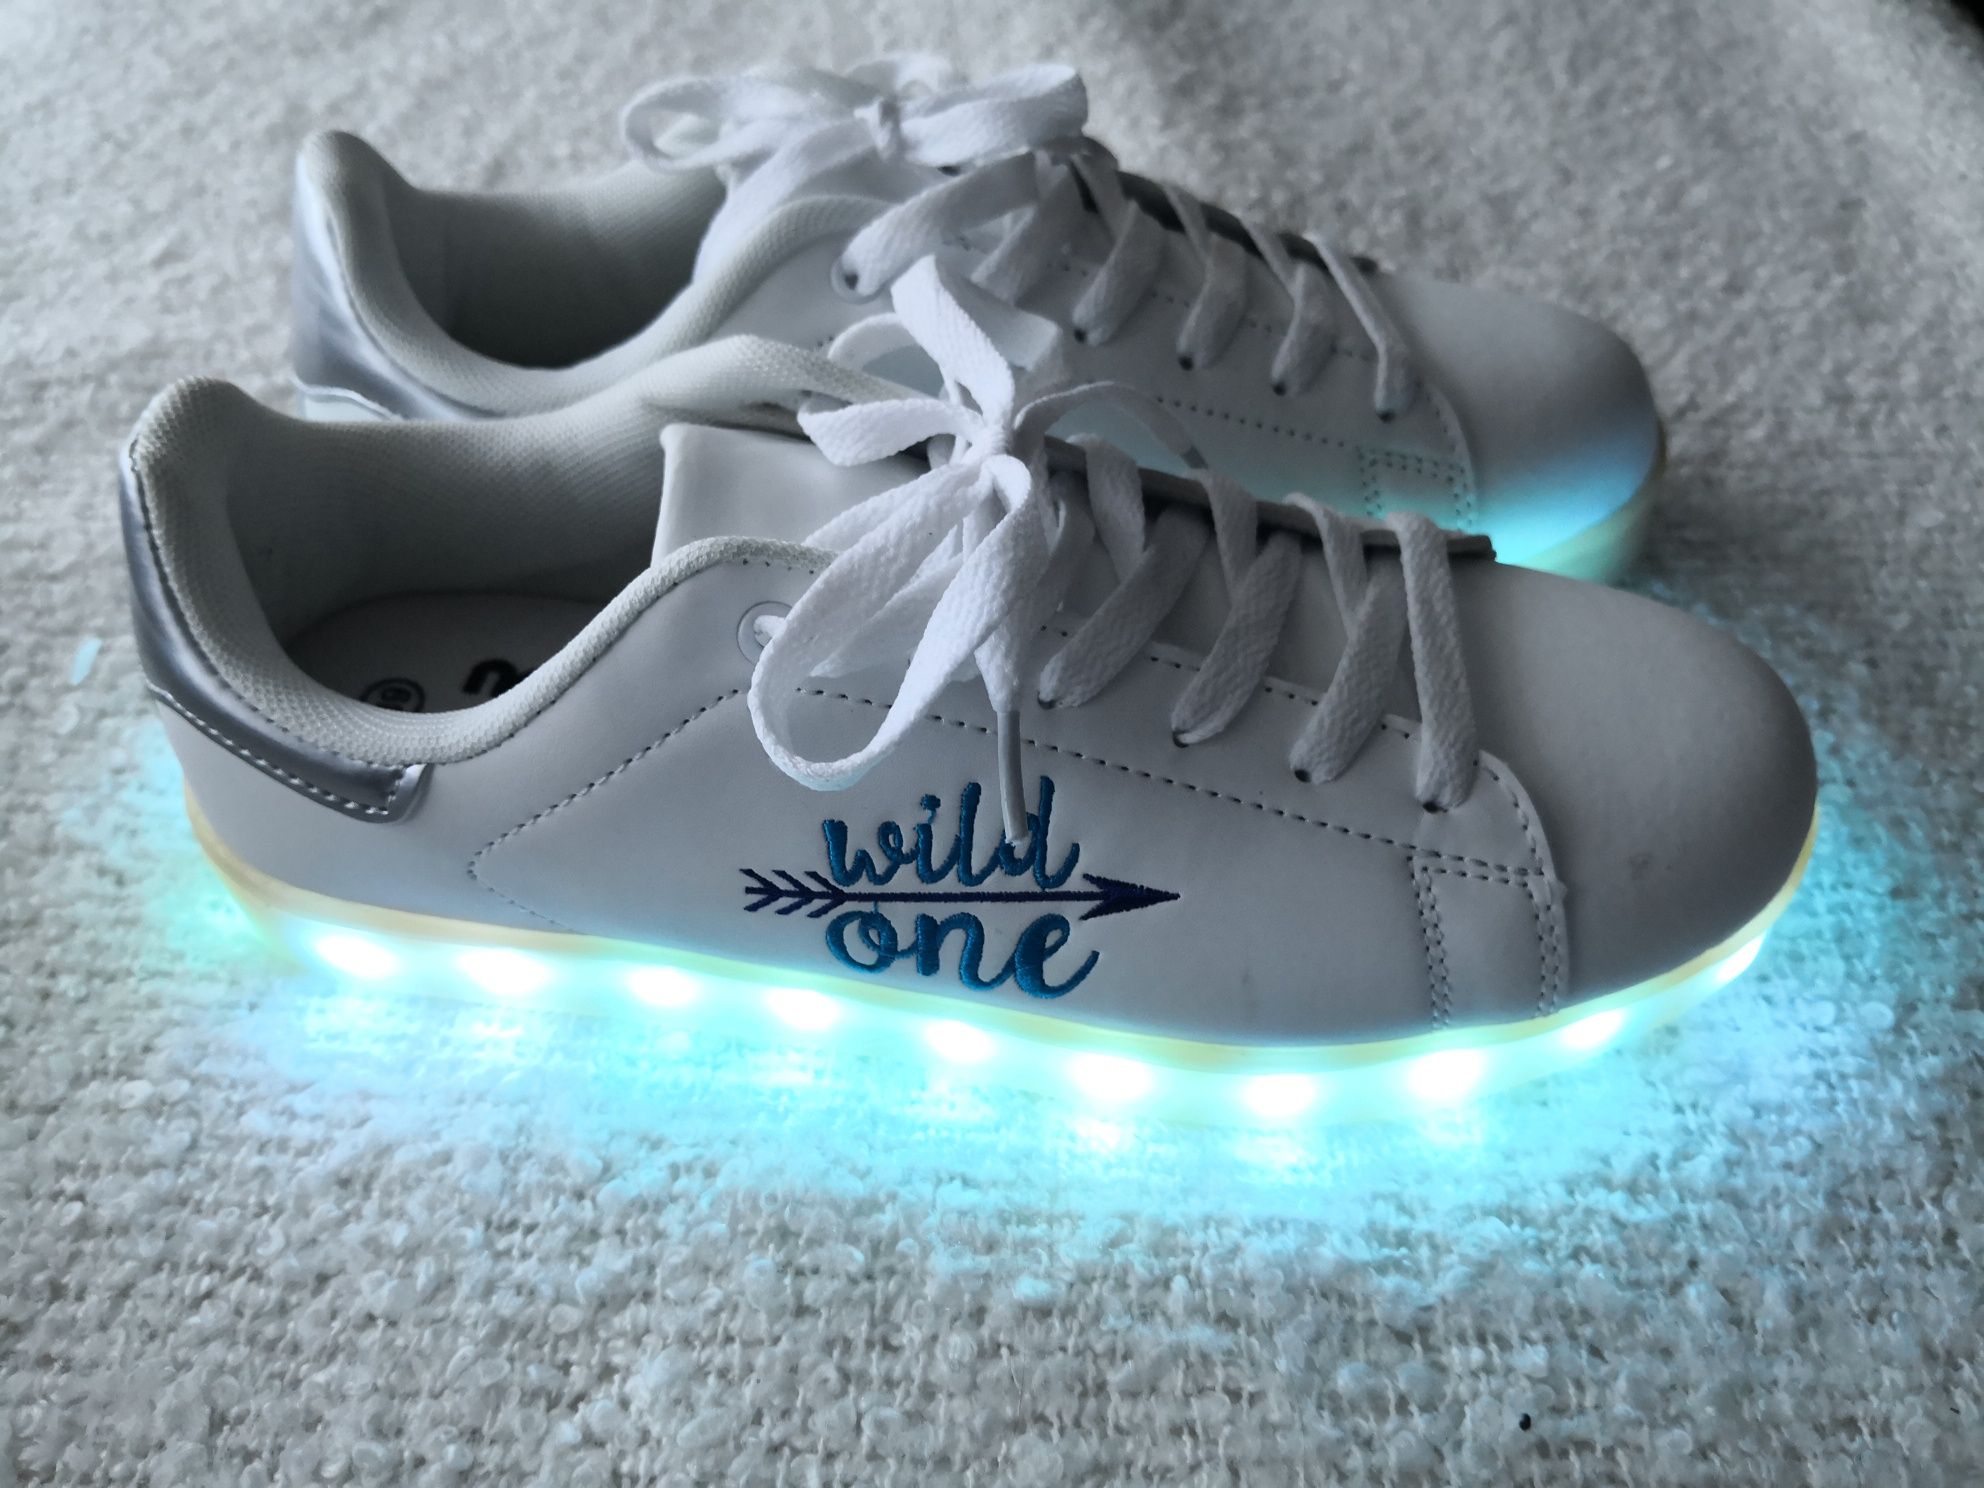 Buty ze światełkami LED Wild One 39